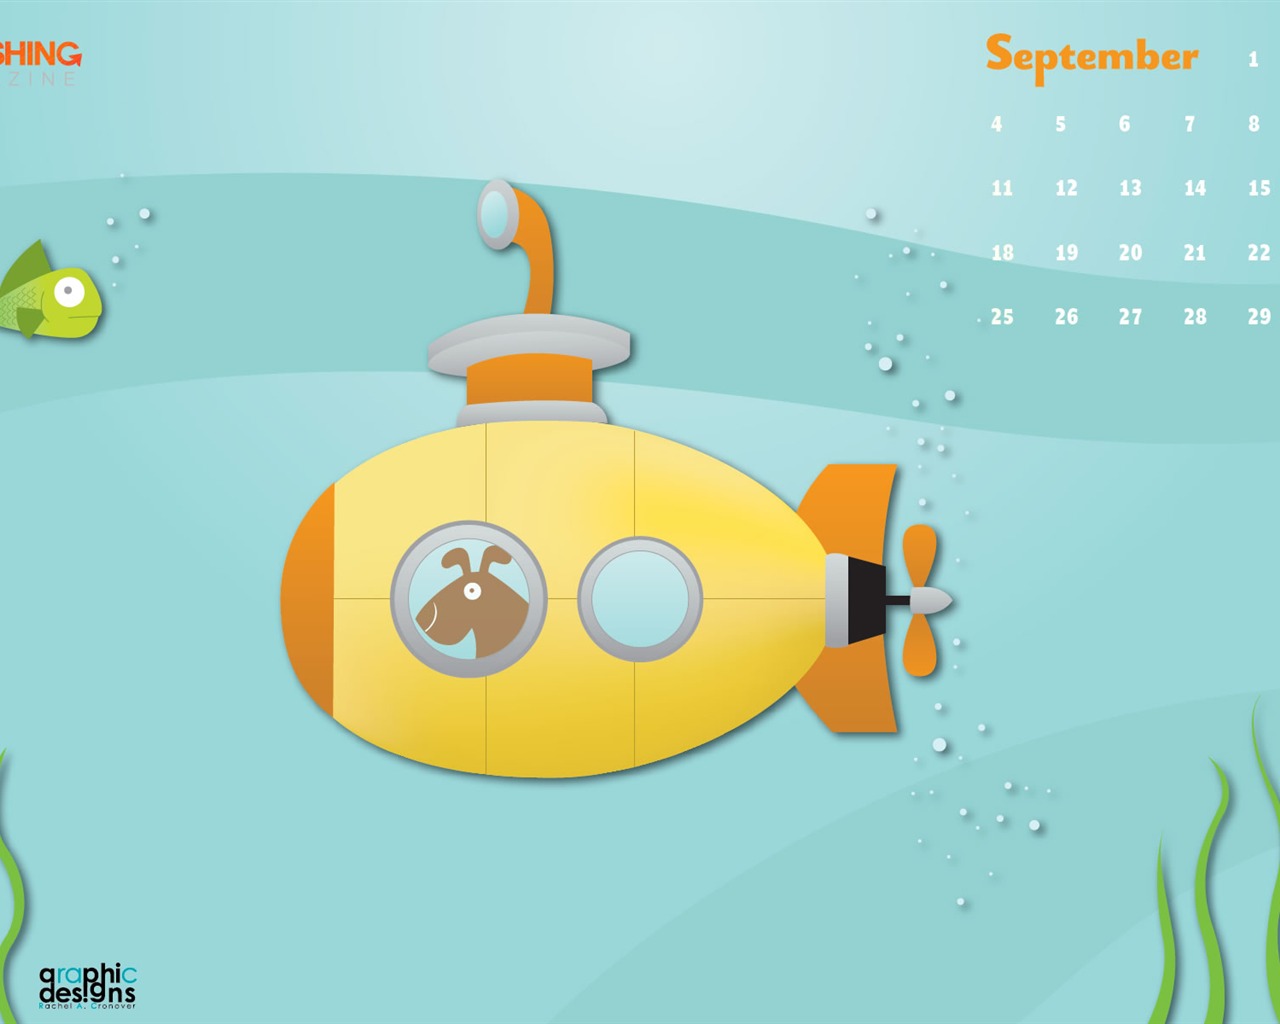 September 2011 Calendar Wallpaper (2) #15 - 1280x1024